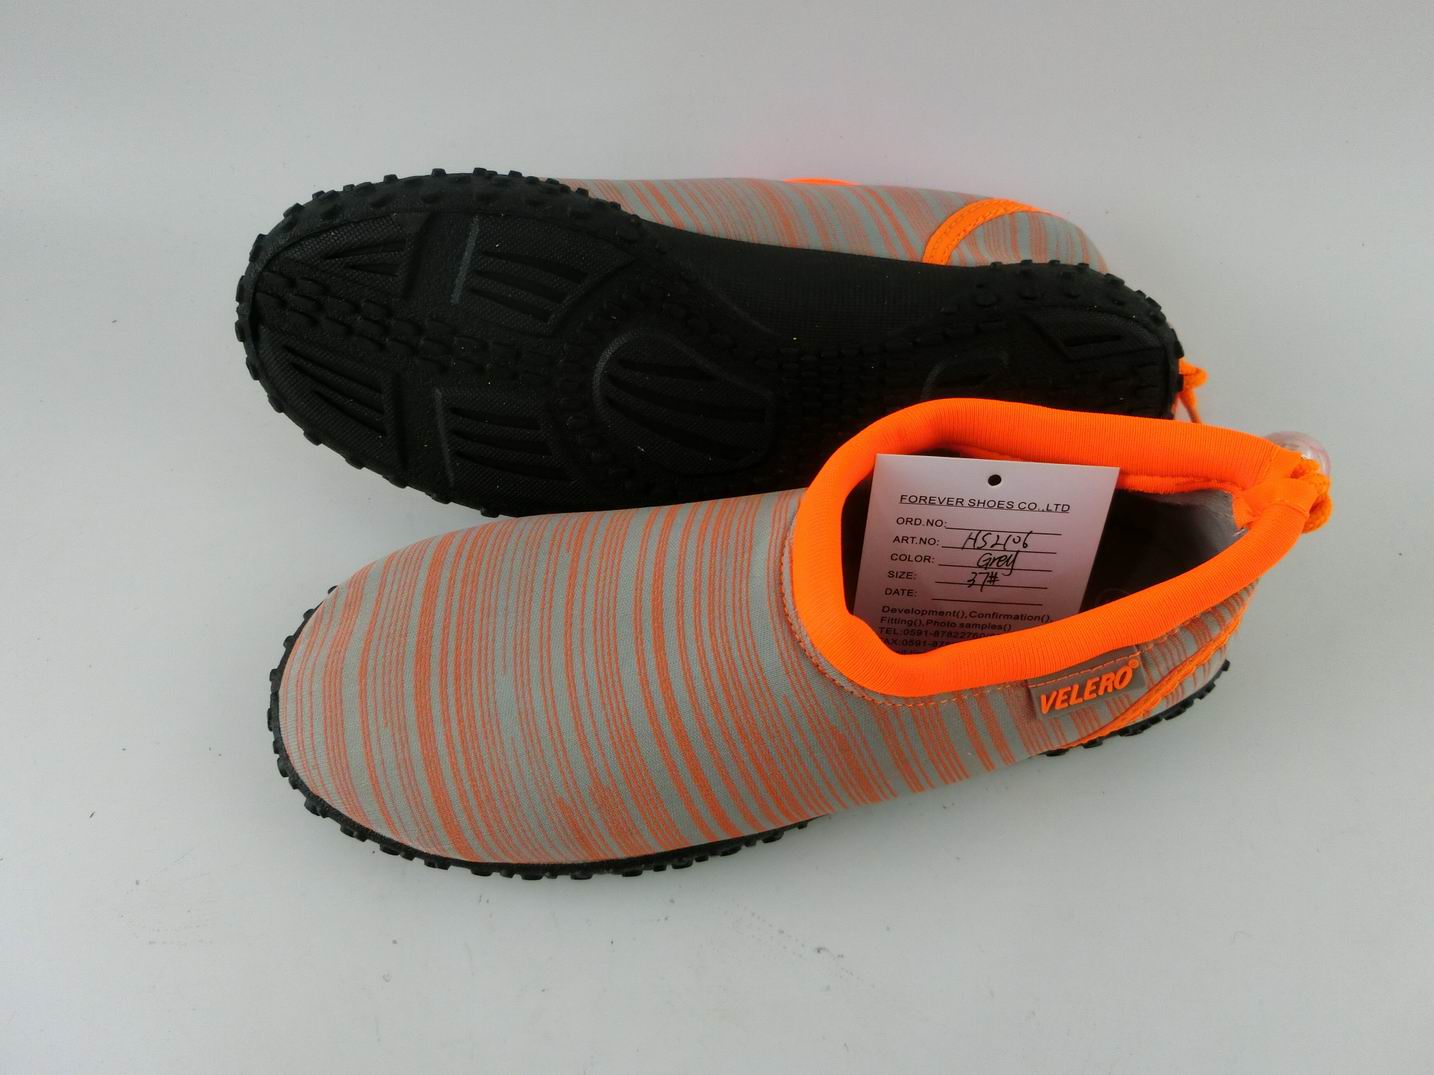 Printing designed adult aqua shoes